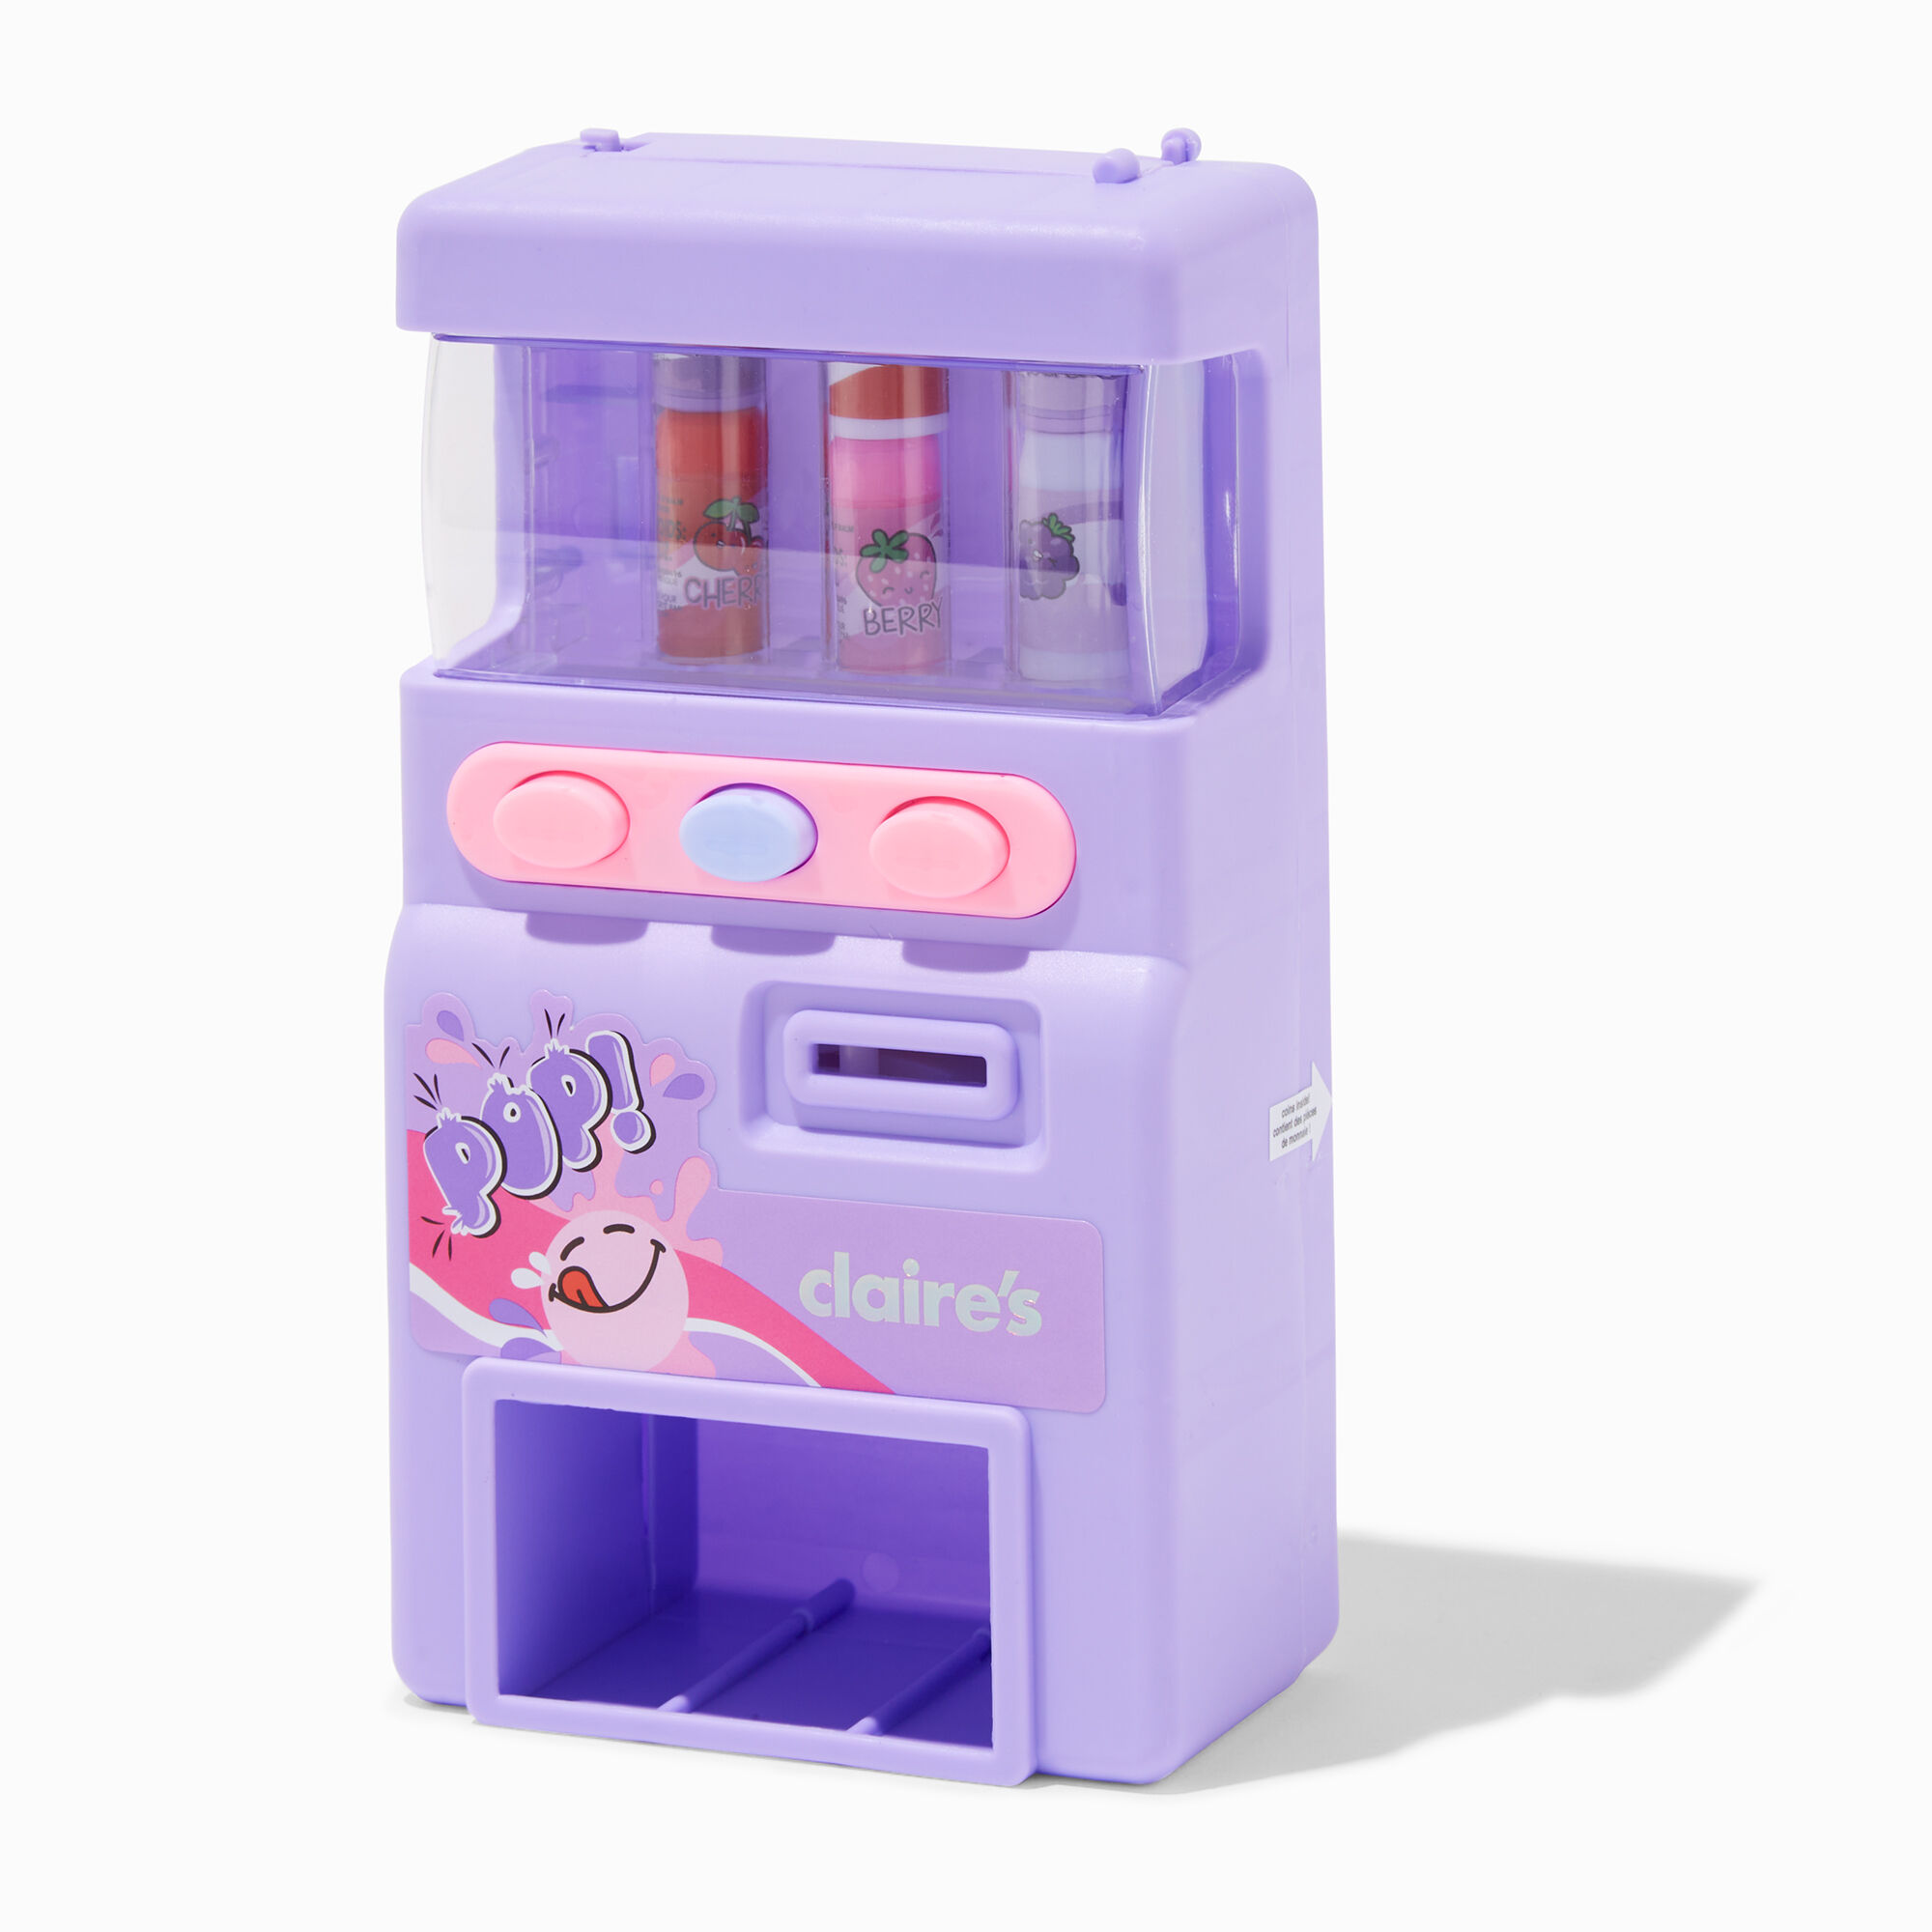 Iscream Lip Gloss Vending Machine